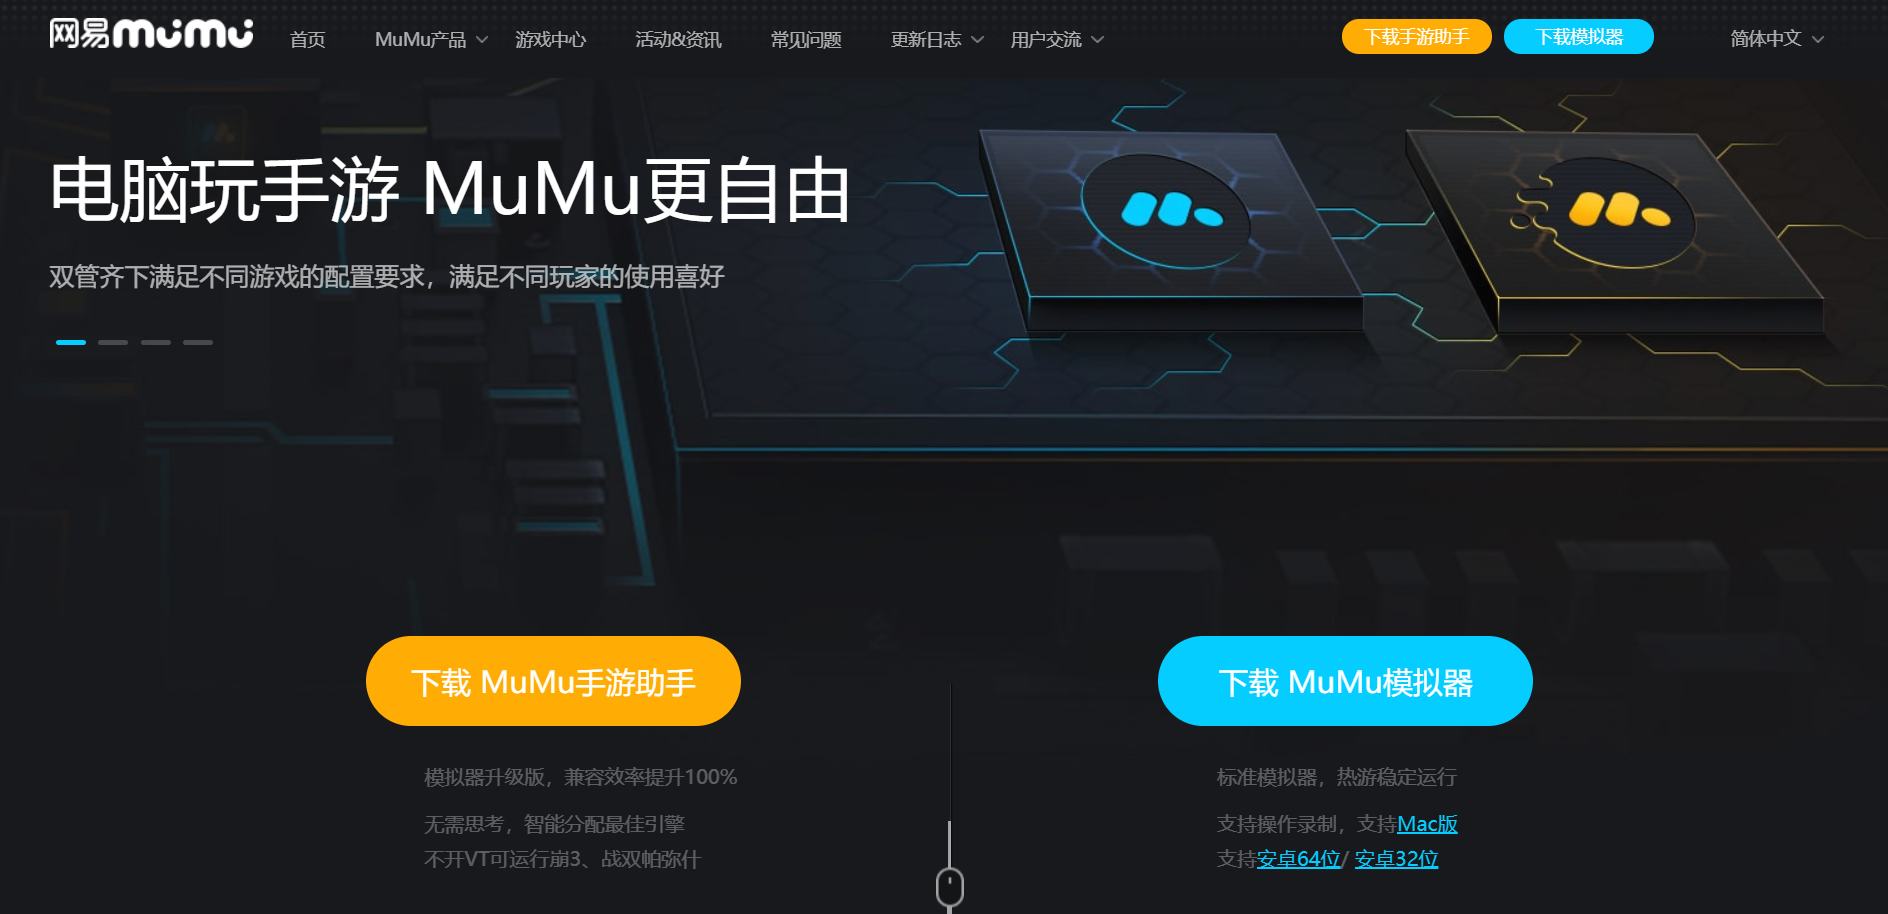 【黑月Extend】PC电脑版：MuMu模拟器带你大屏体验、键鼠操作、高清高帧感受